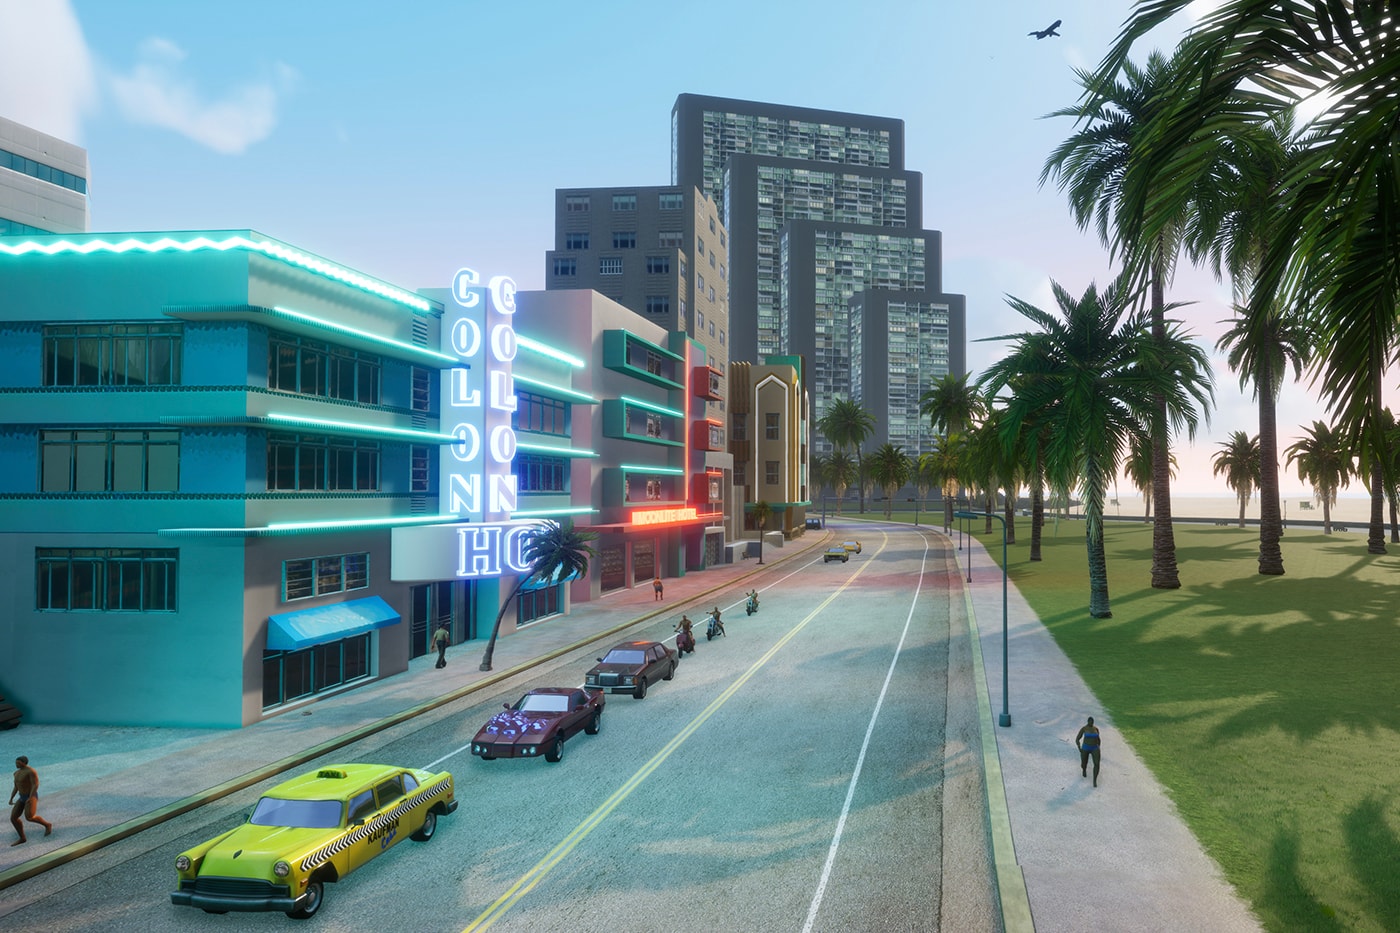 Grand Theft Auto: Vice City – The Definitive Edition Comparison Video 